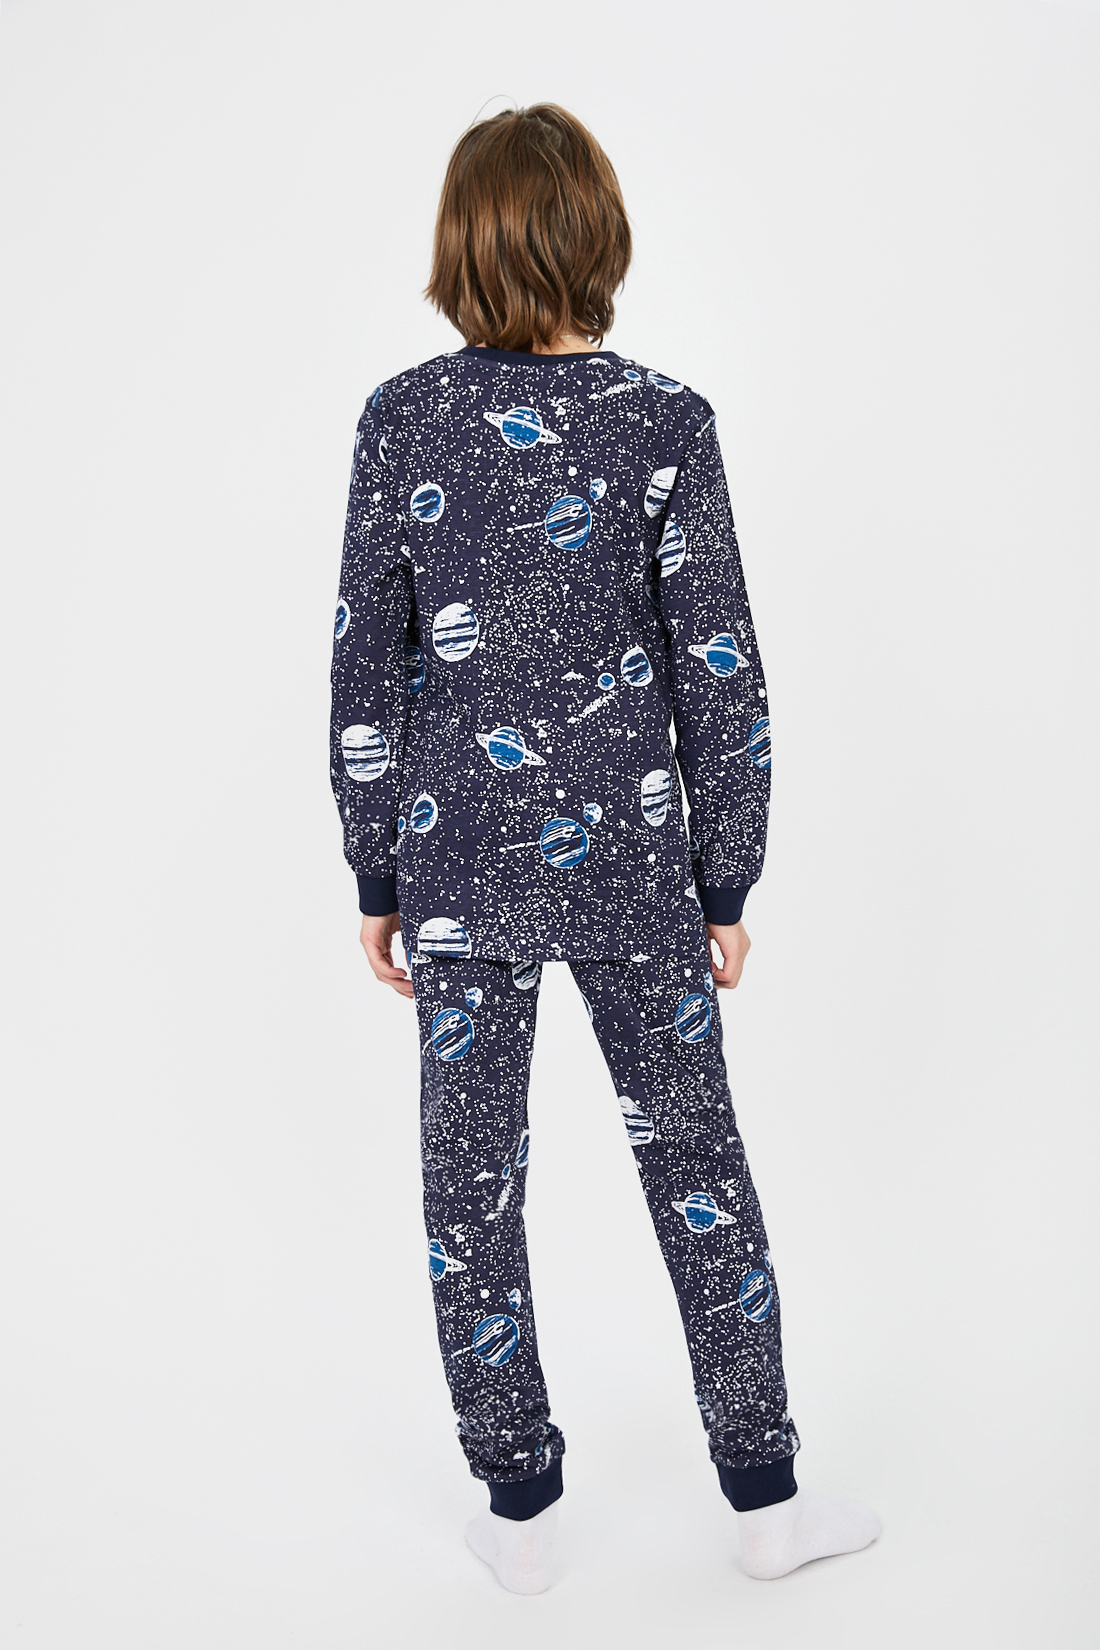 Пижама (арт. baon BK881501), размер 110, цвет синий Пижама (арт. baon BK881501) - фото 5